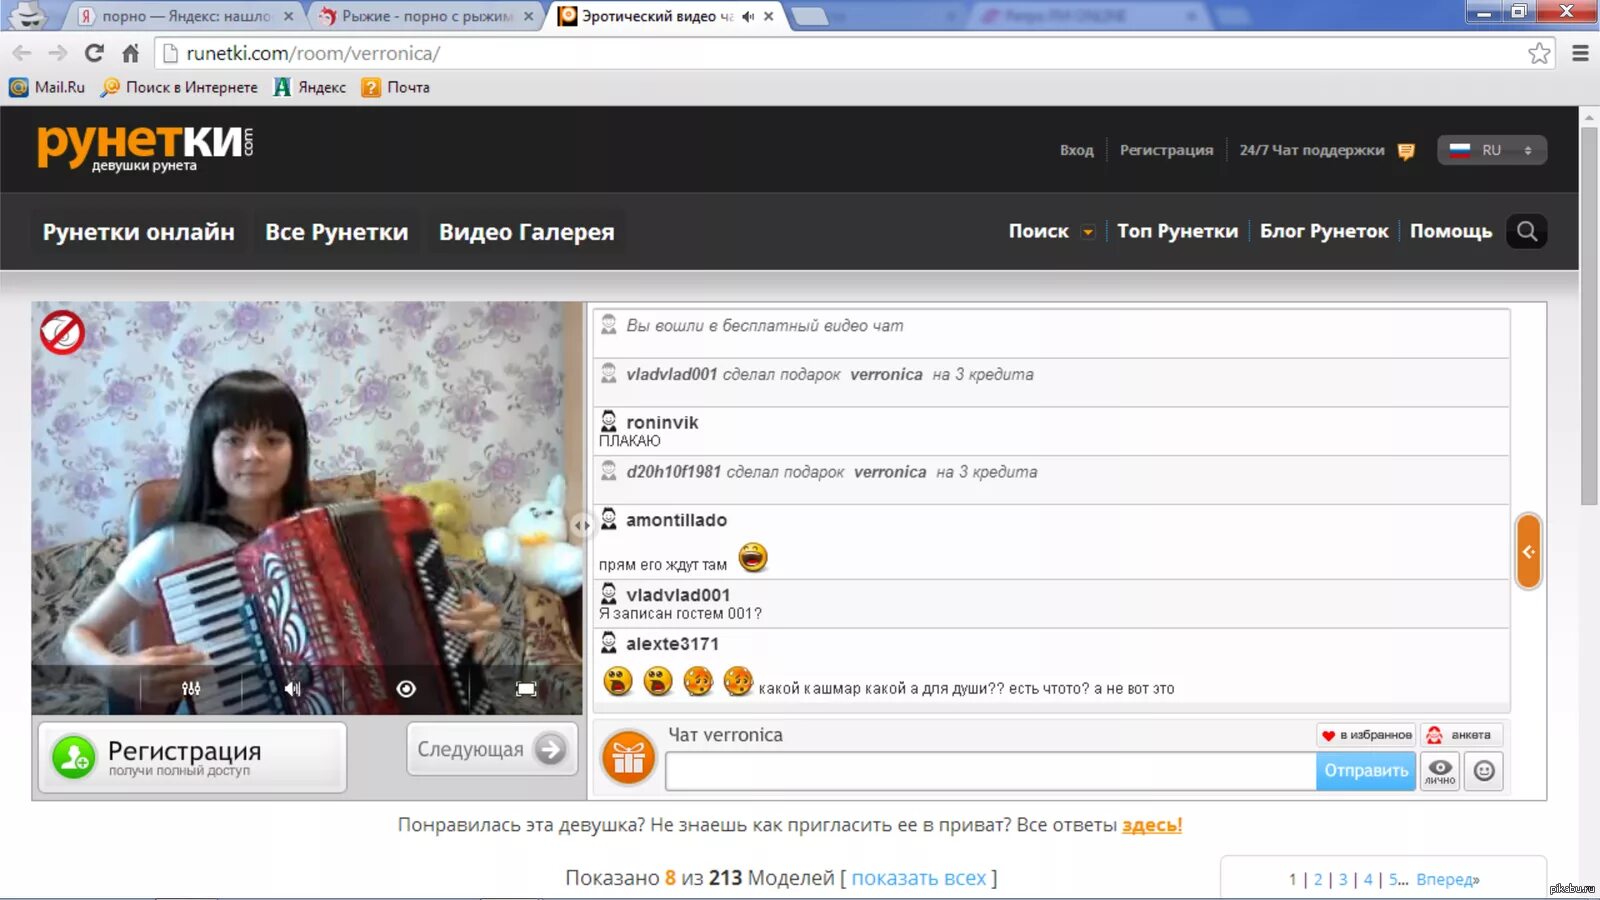 Ру камс чат. Видеочат с девушками рунета. Популярные сайты рунетки. Самые известные рунетки.